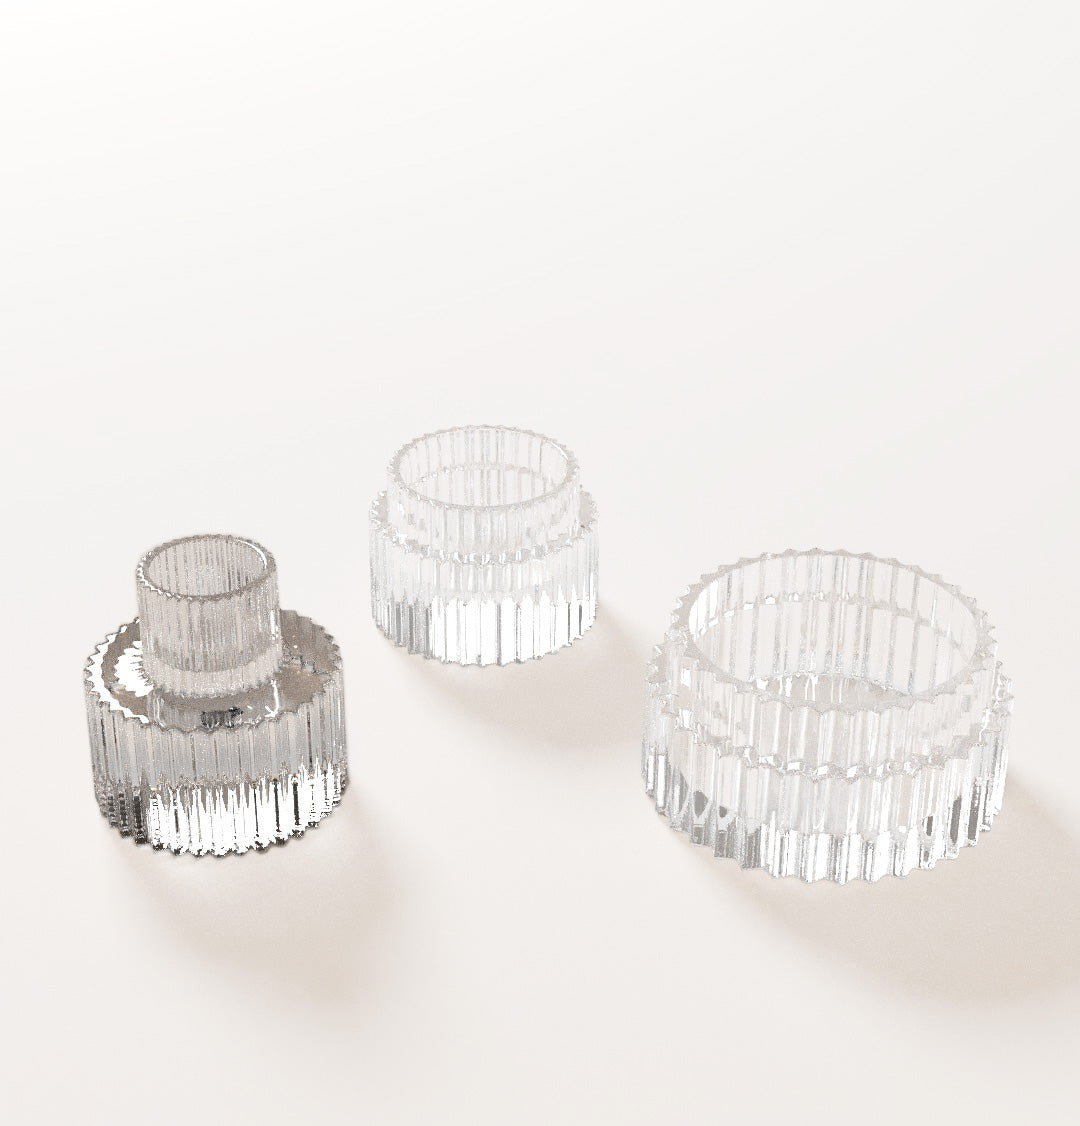 Ribbel kandelaar Glas van Ons Hus te koop bij LEEF mode en accessoires Meppel